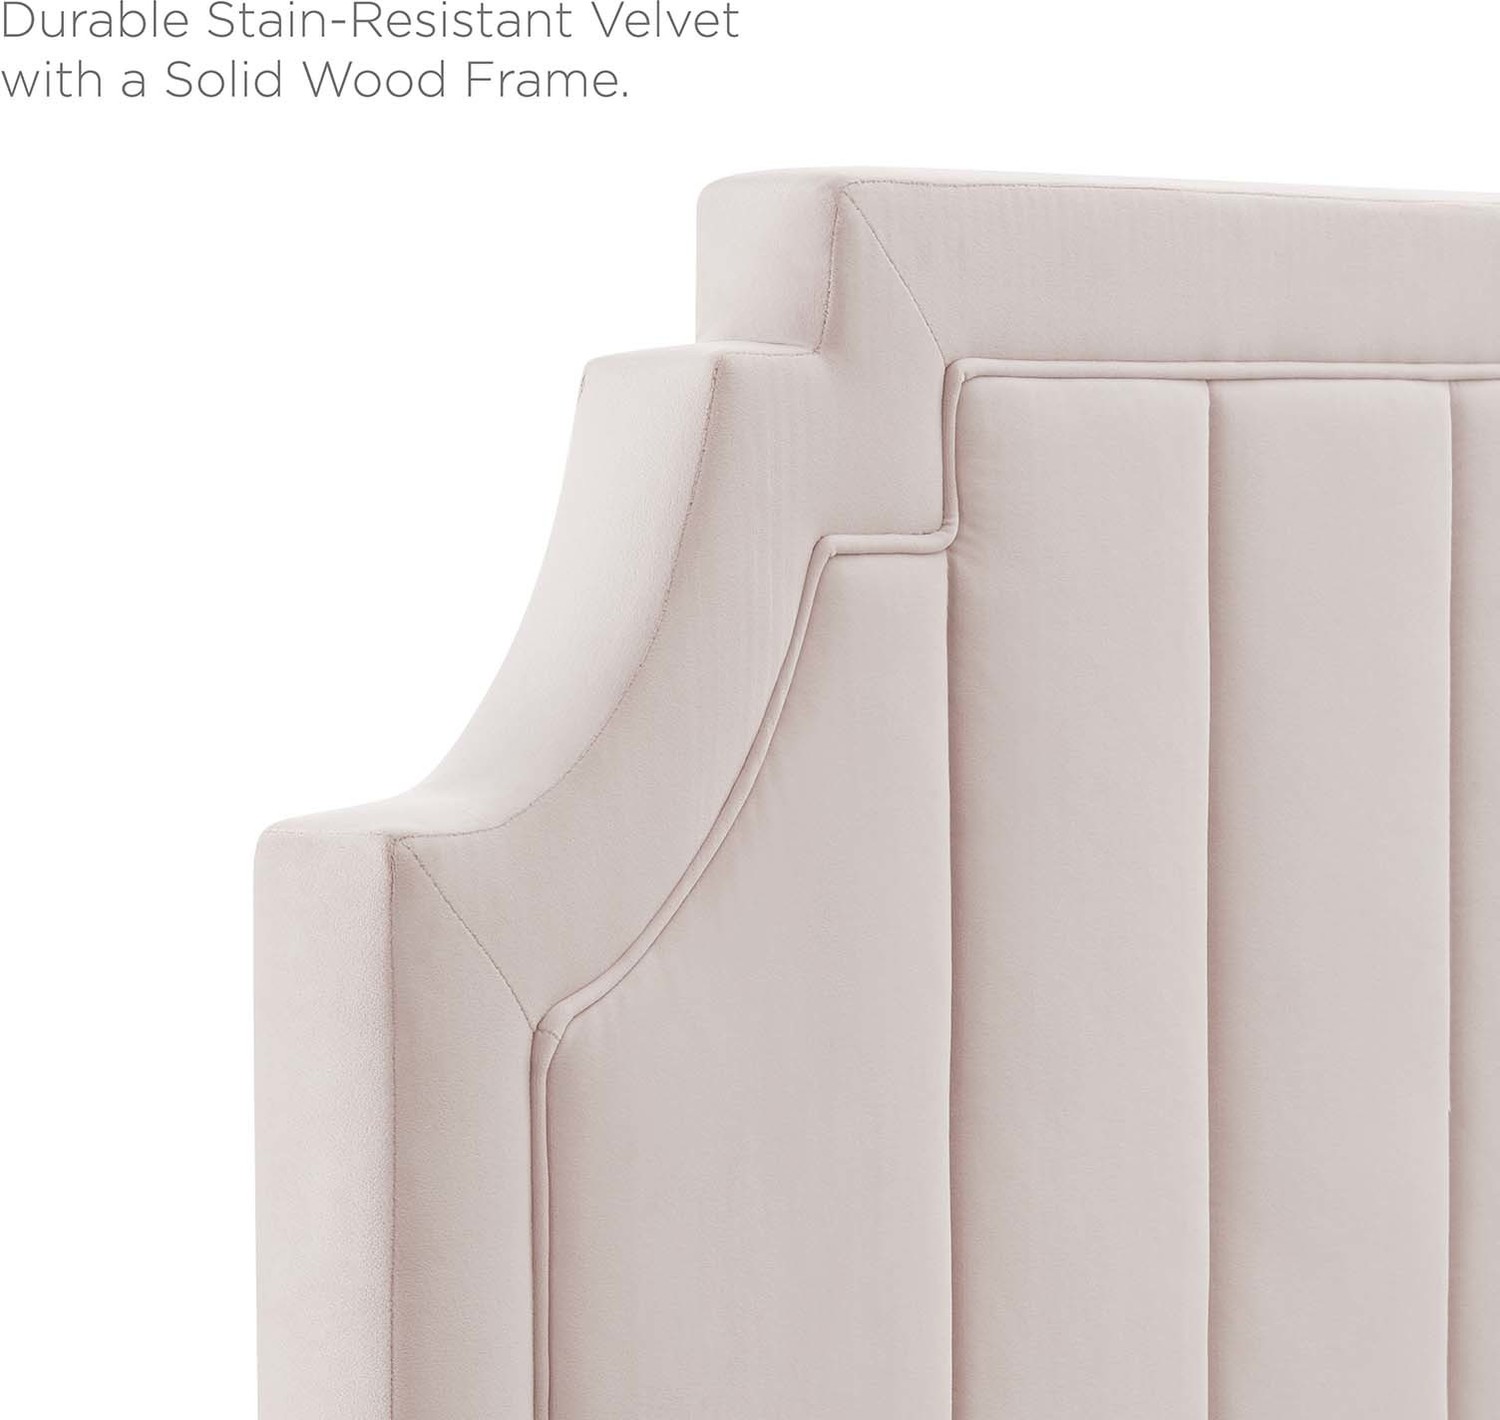 black wood bed frame king Modway Furniture Beds Pink